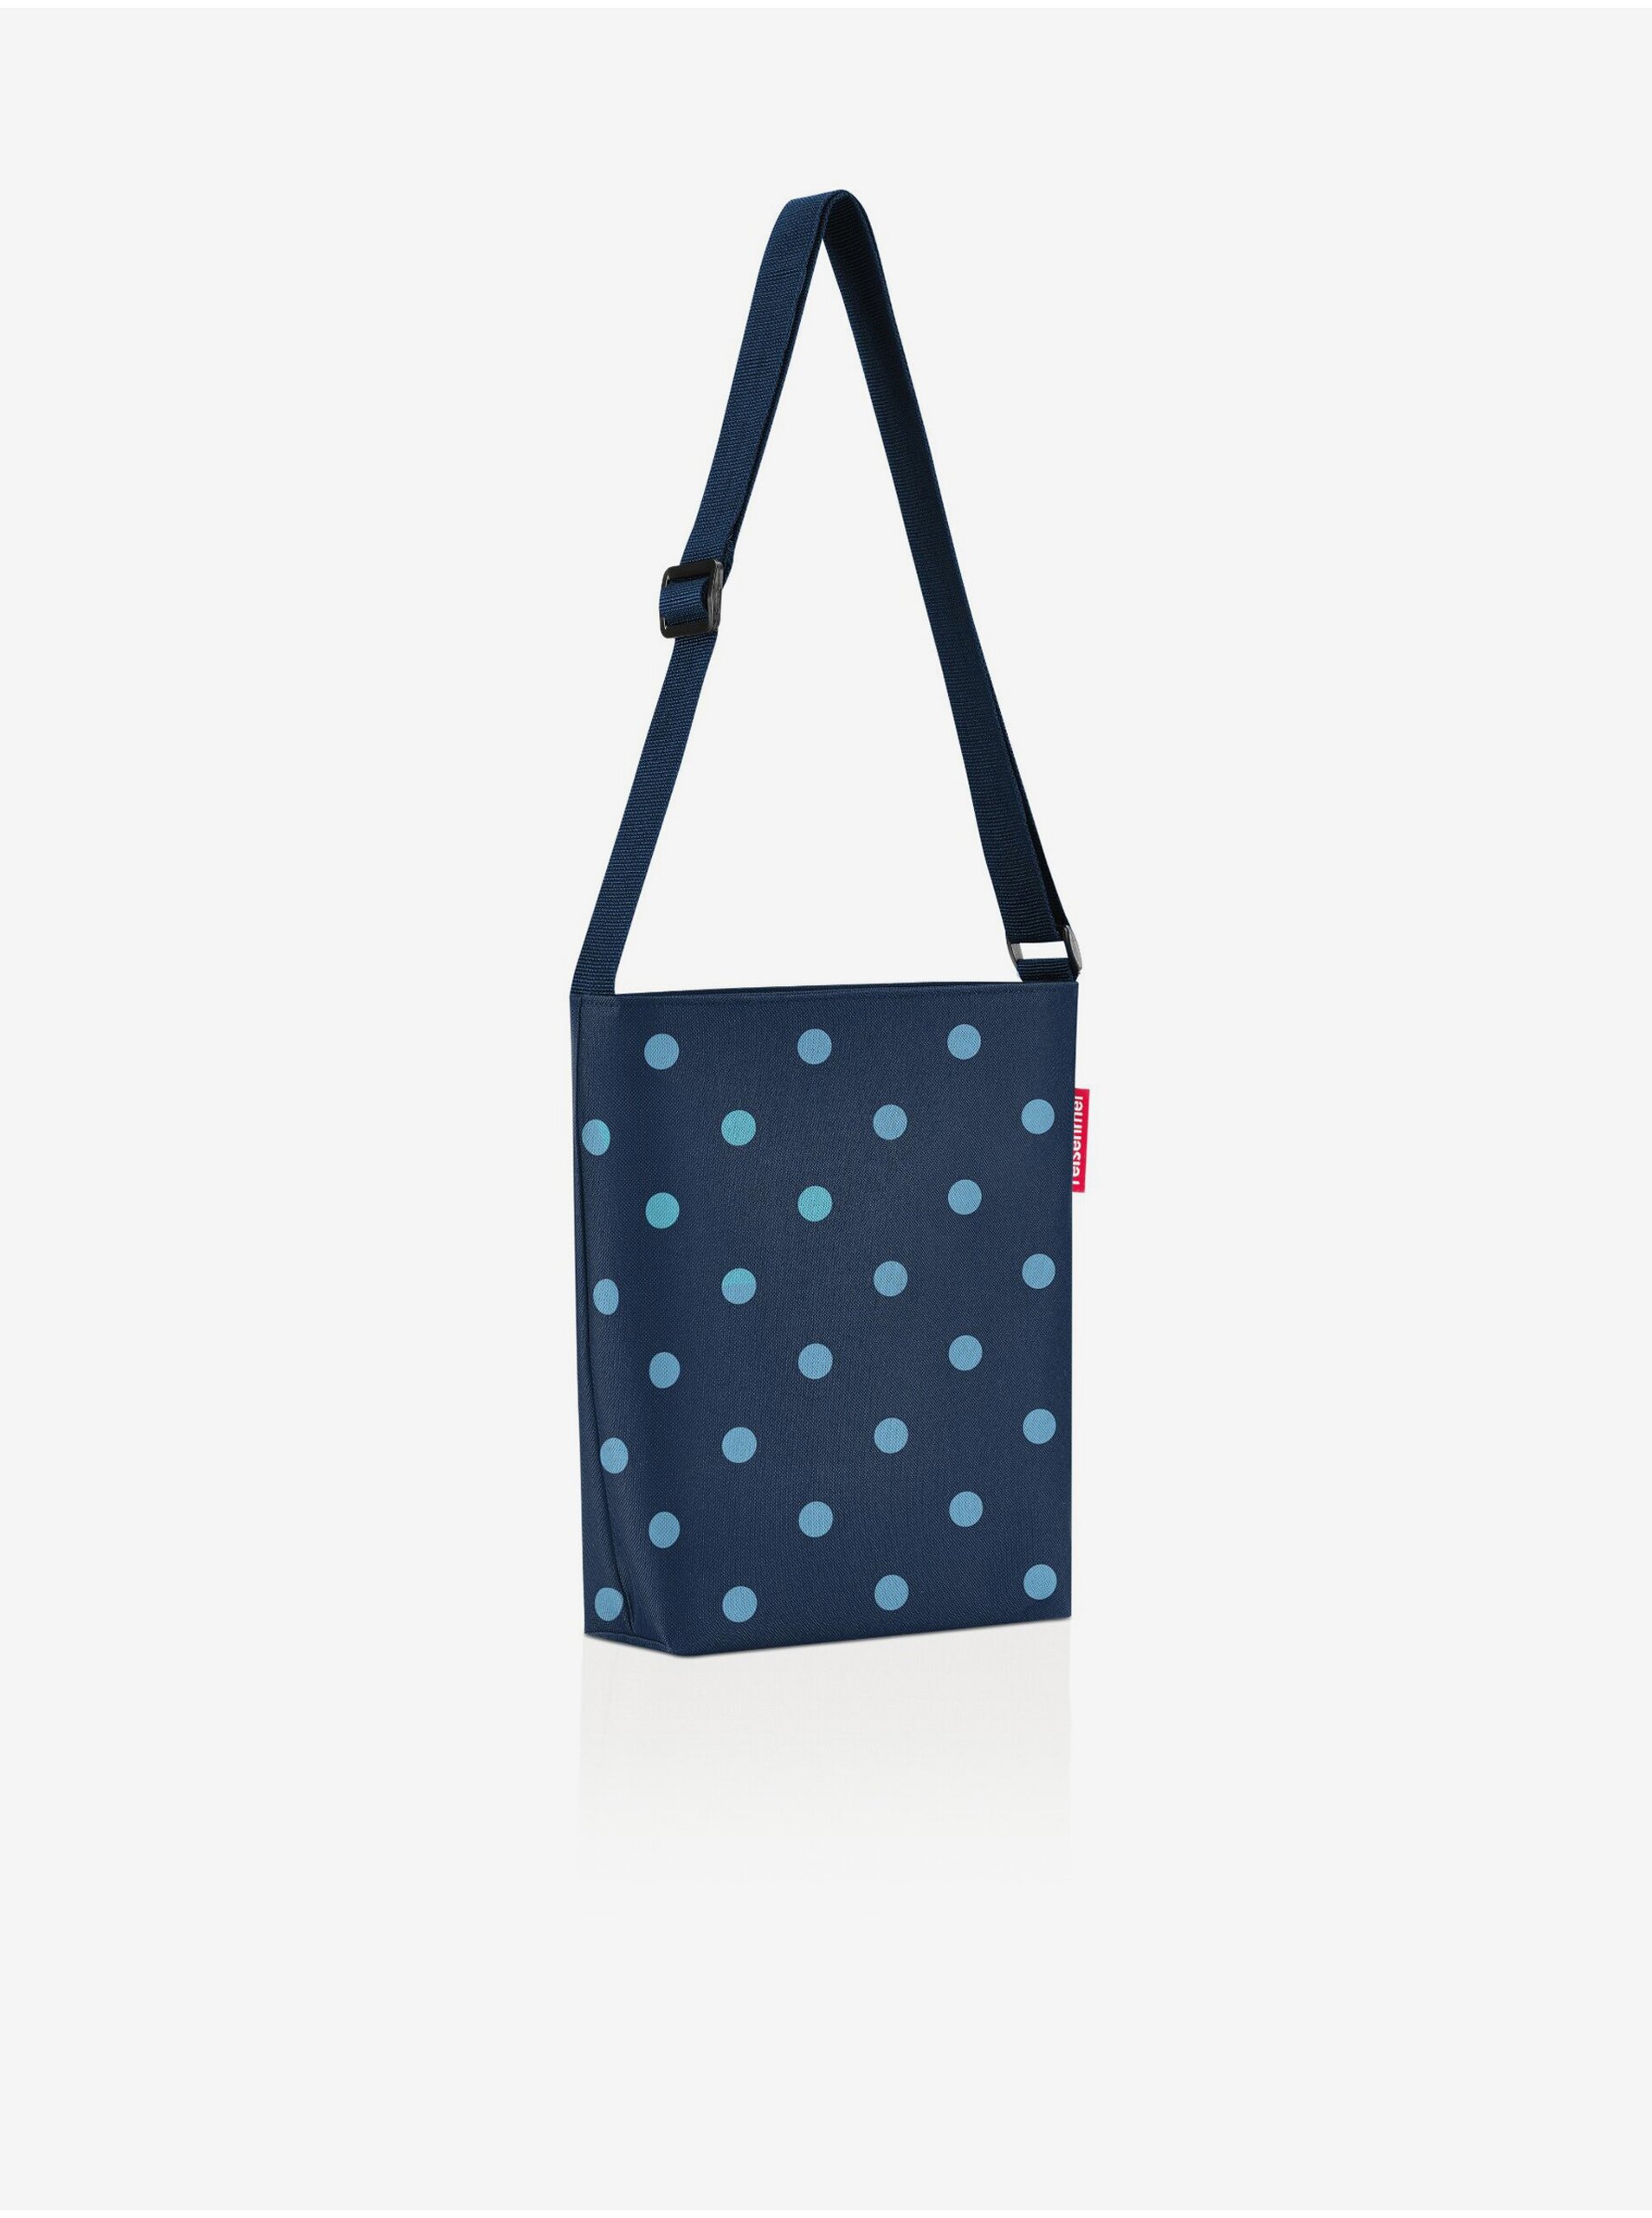 Lacno Tmavomodrá dámska bodkovaná kabelka cez rameno Reisenthel Shoulderbag S Mixed Dots Blue